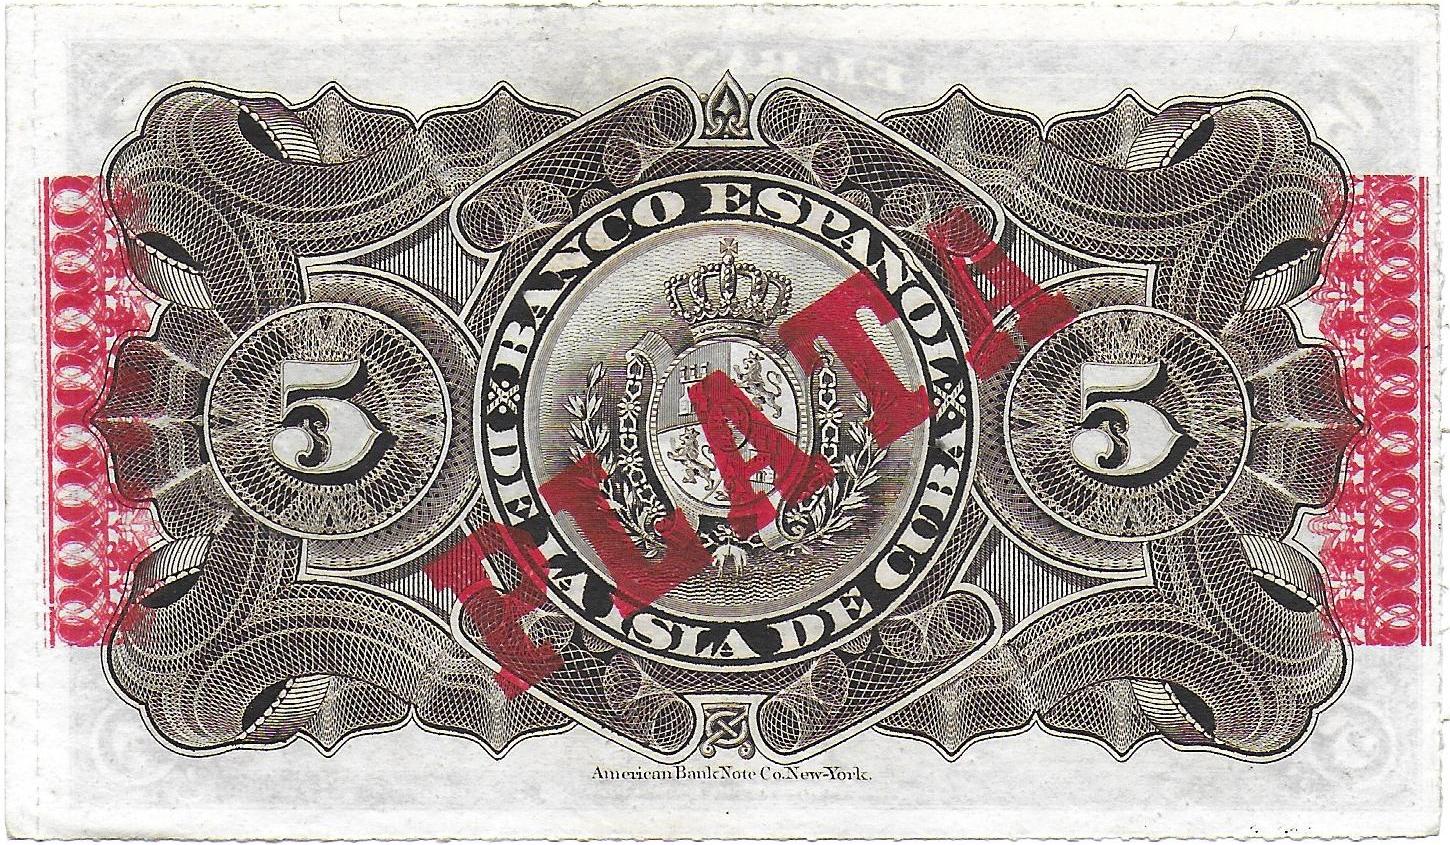 Cuba Peso 1896 back.jpg